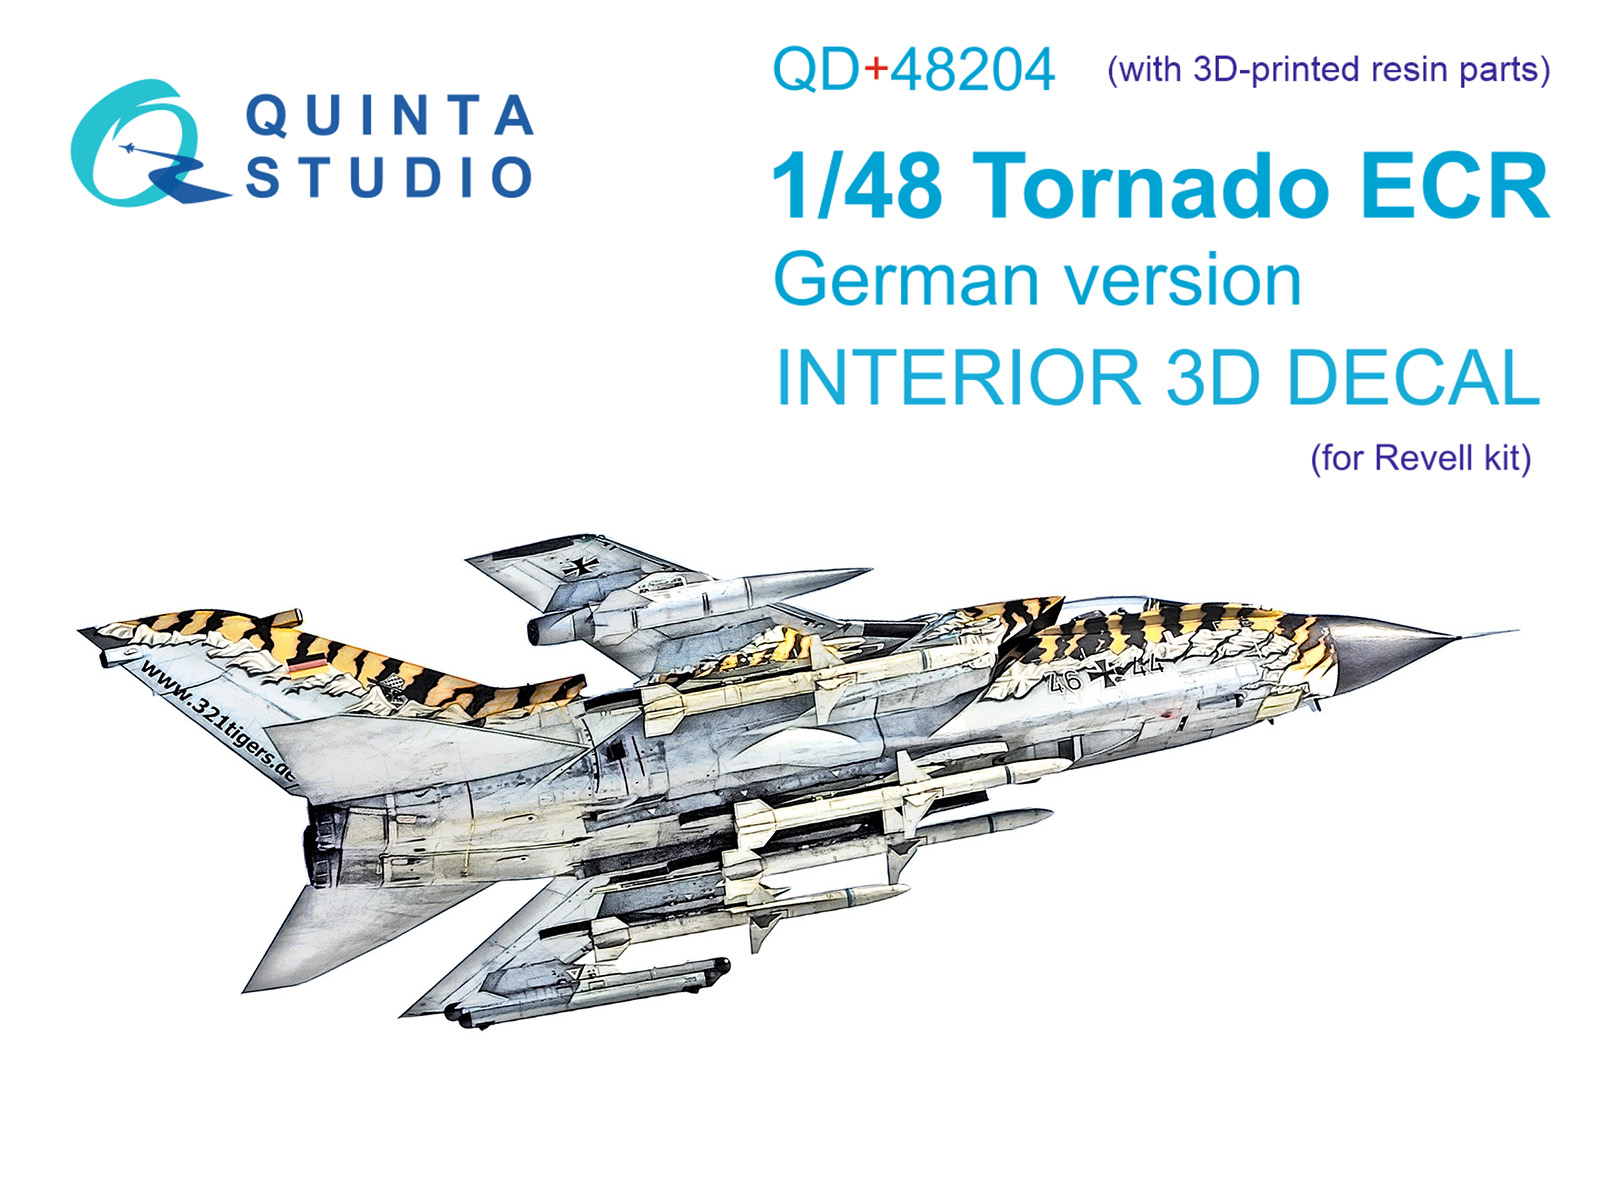 QD+48204  декали 3D Декаль интерьера кабины  Tornado ECR German (Revell) (с 3D деталями)  (1:48)